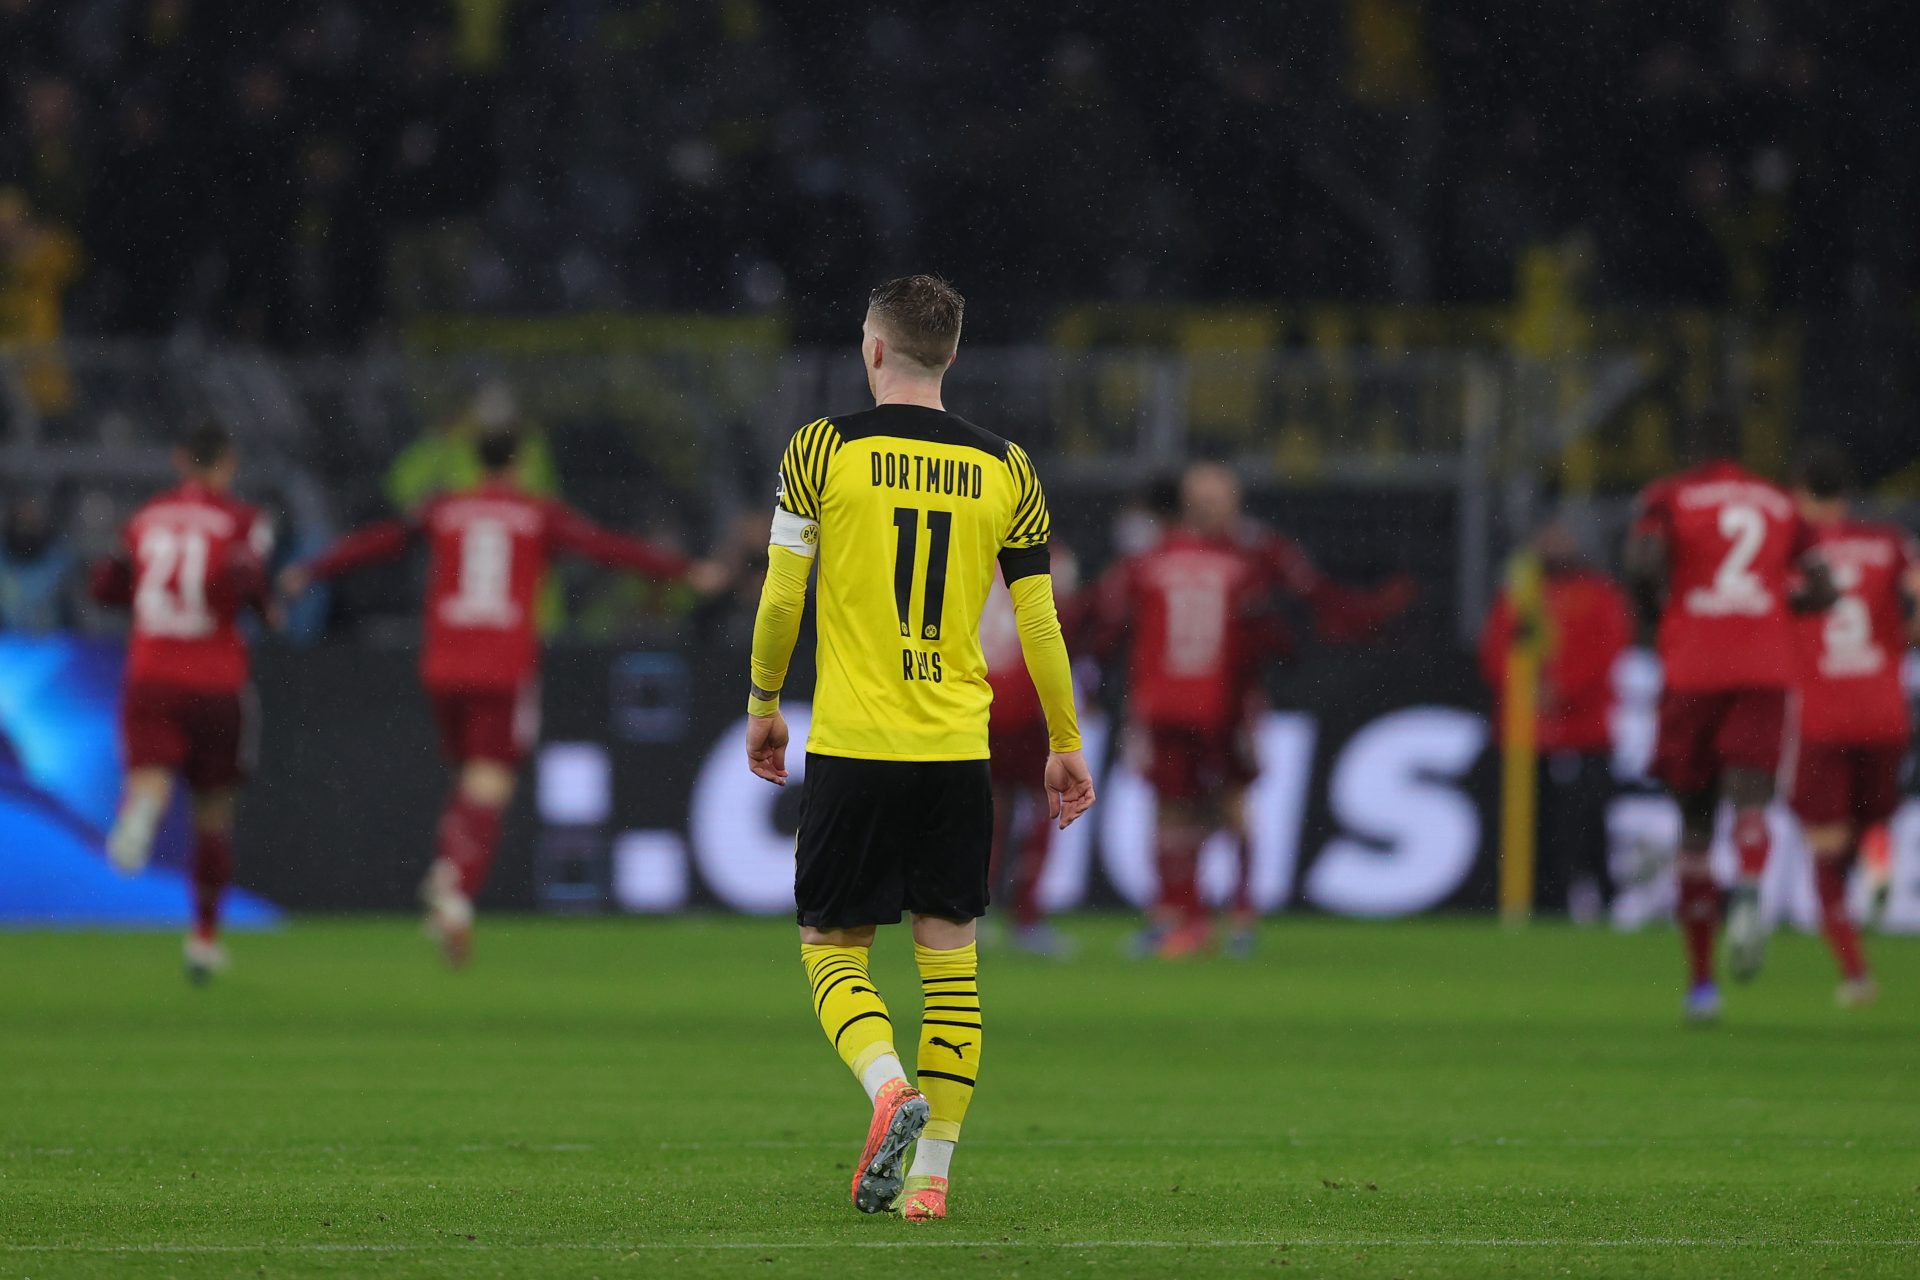 Loyalty to Dortmund